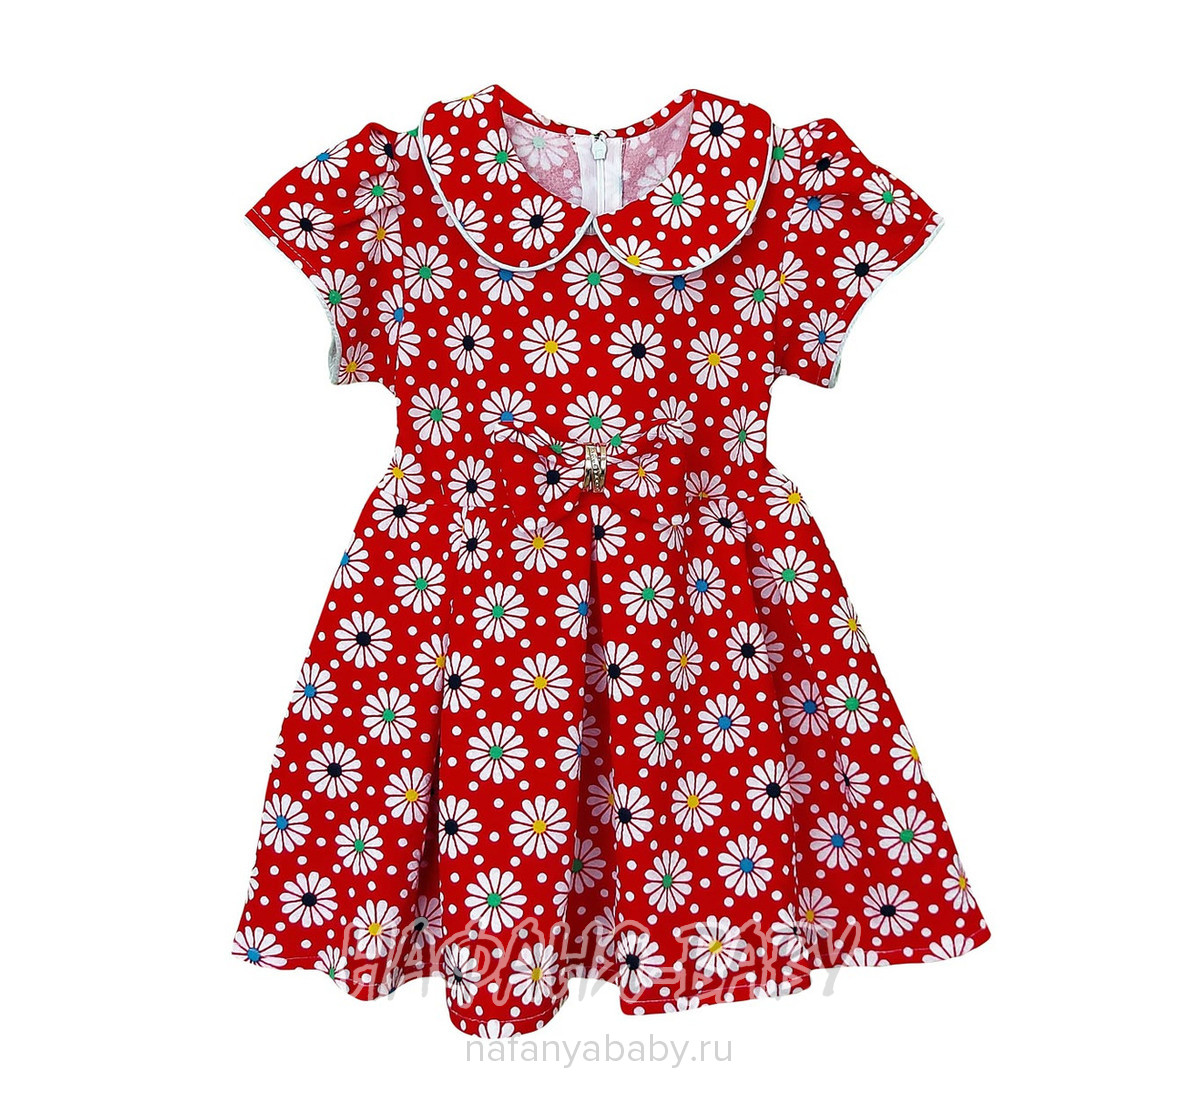 Детское платье KGMART арт: 2199, 5-9 лет, 1-4 года, цвет розовый, оптом 